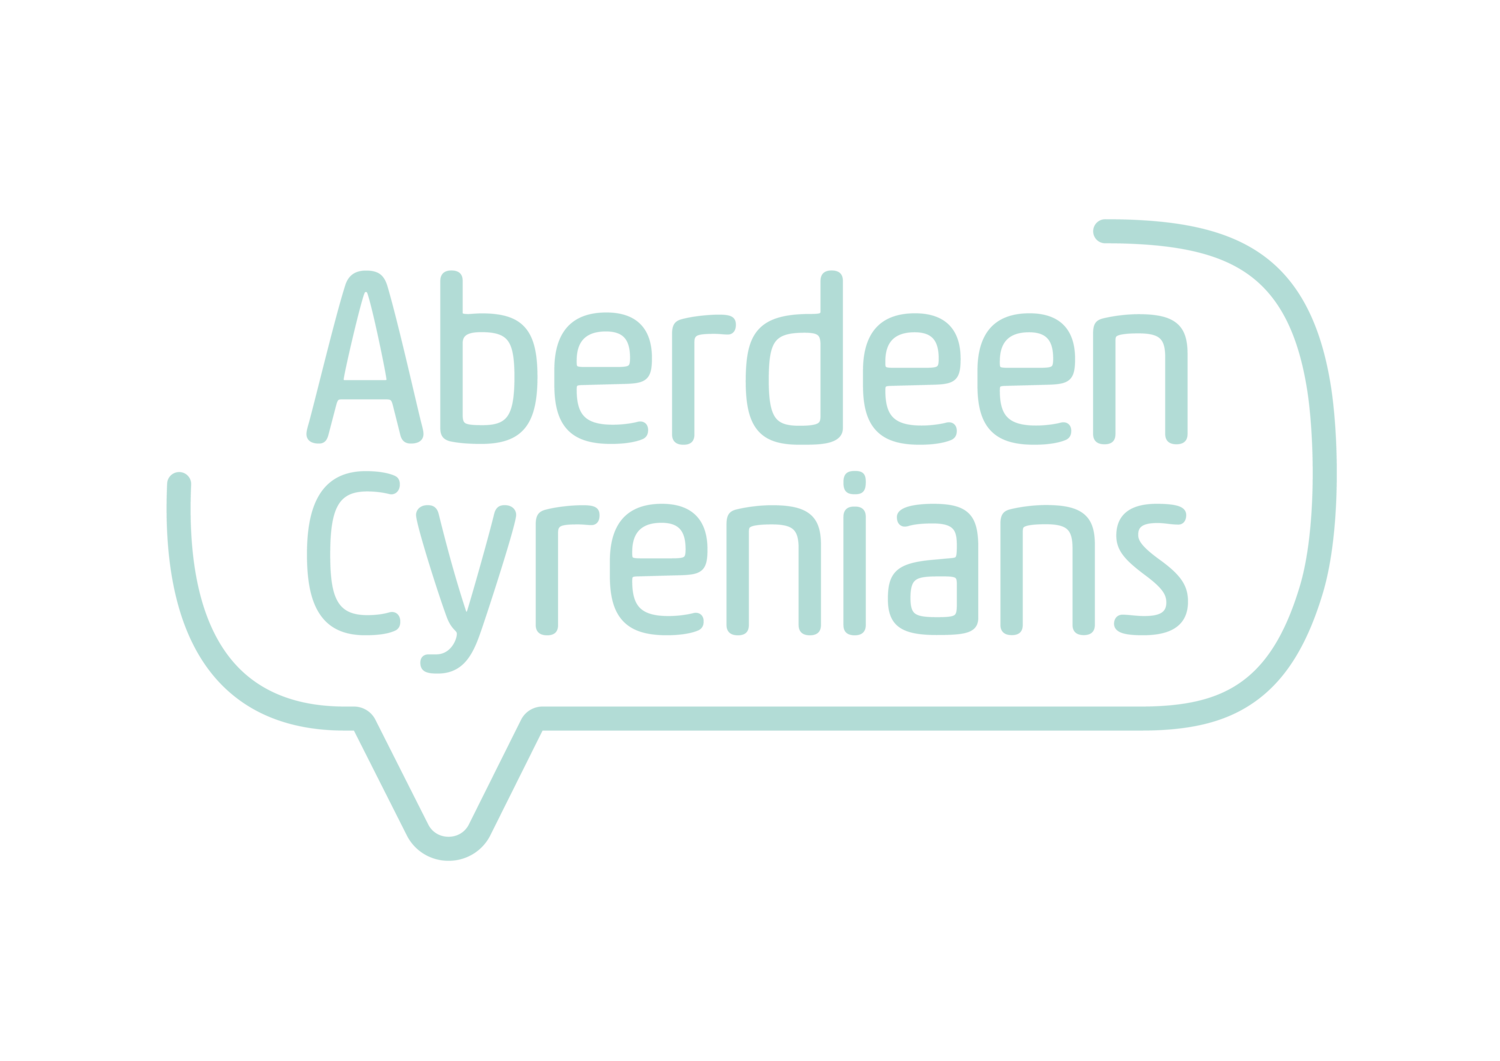 Aberdeen Cyrenians